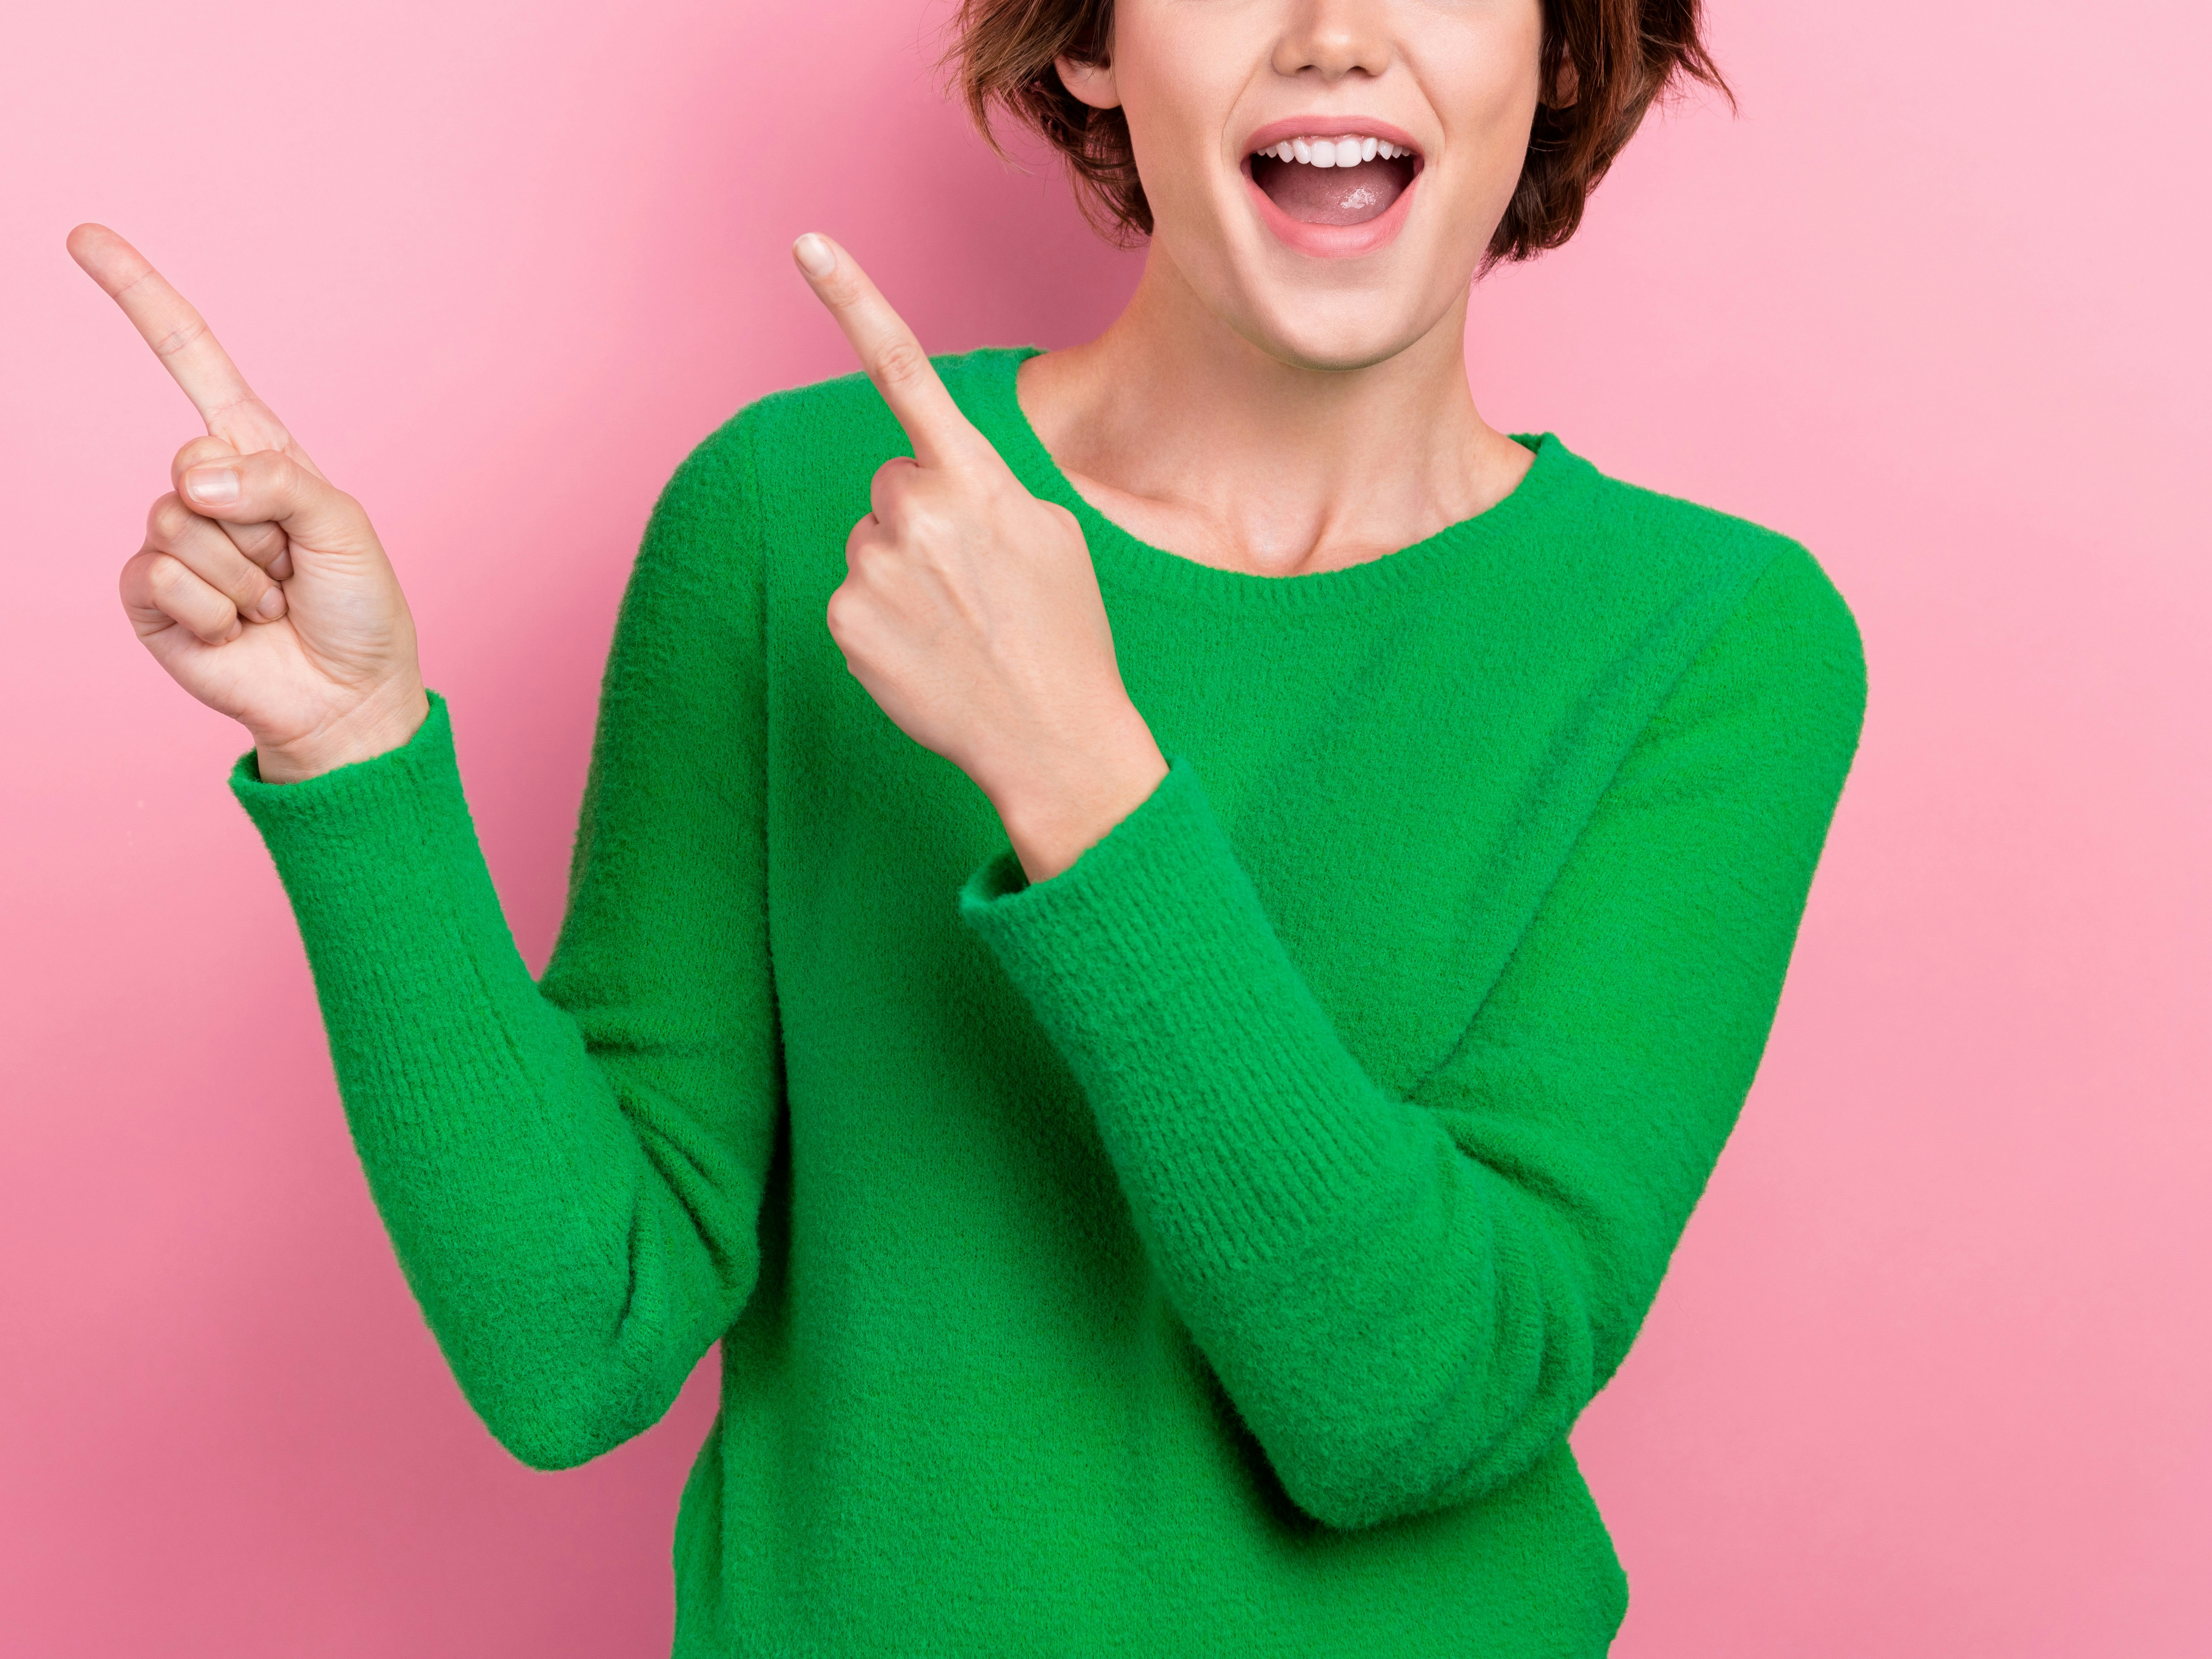 kvinne i grønn genser som smiler og peker med pekefingerne opp i luften. Rosa bakgrunn